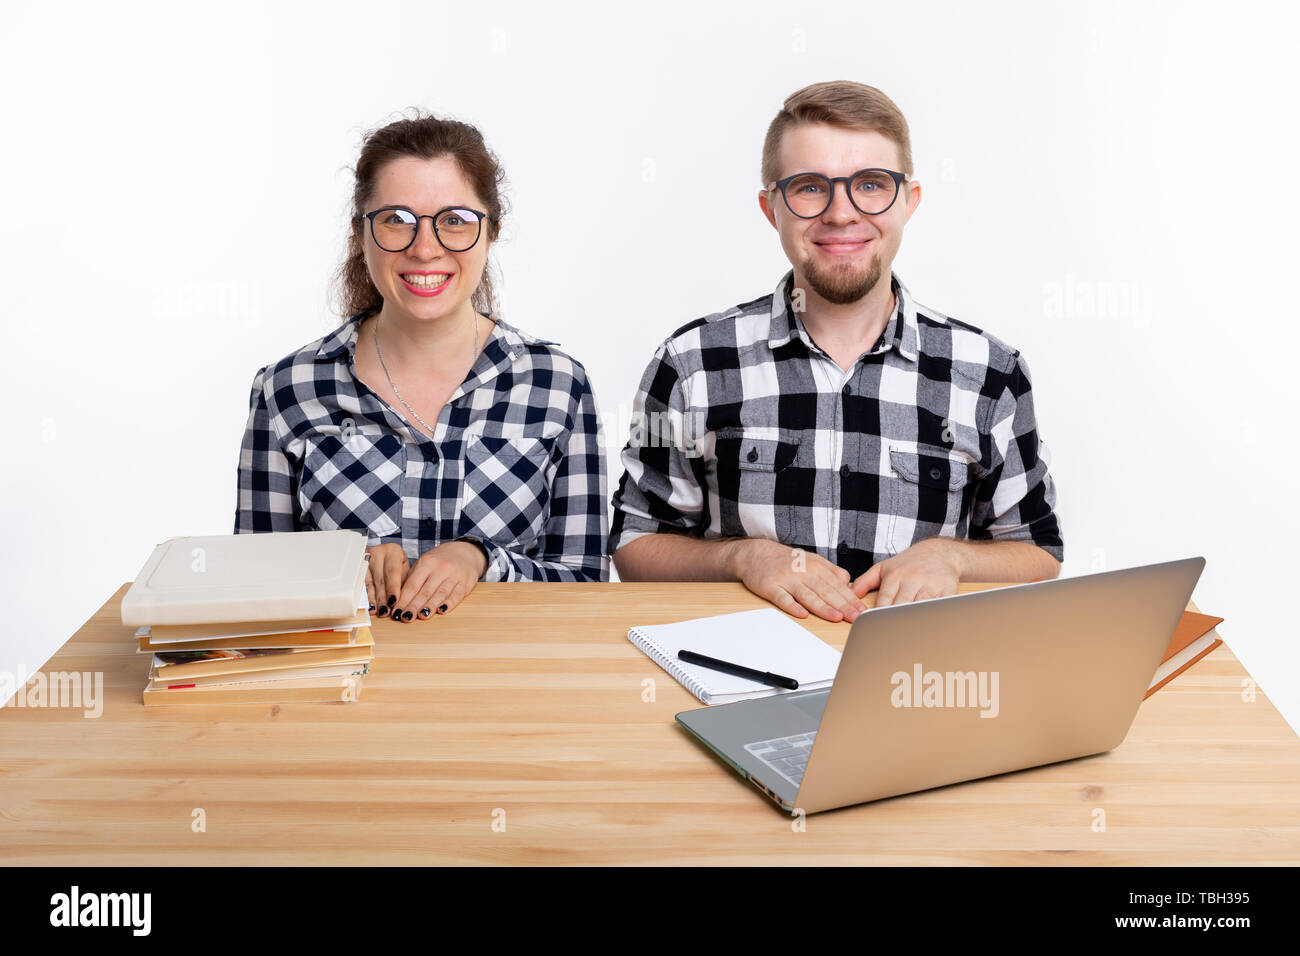 Le persone e il concetto di istruzione - due studenti vestito in plaid shirt seduti a un tavolo Foto Stock